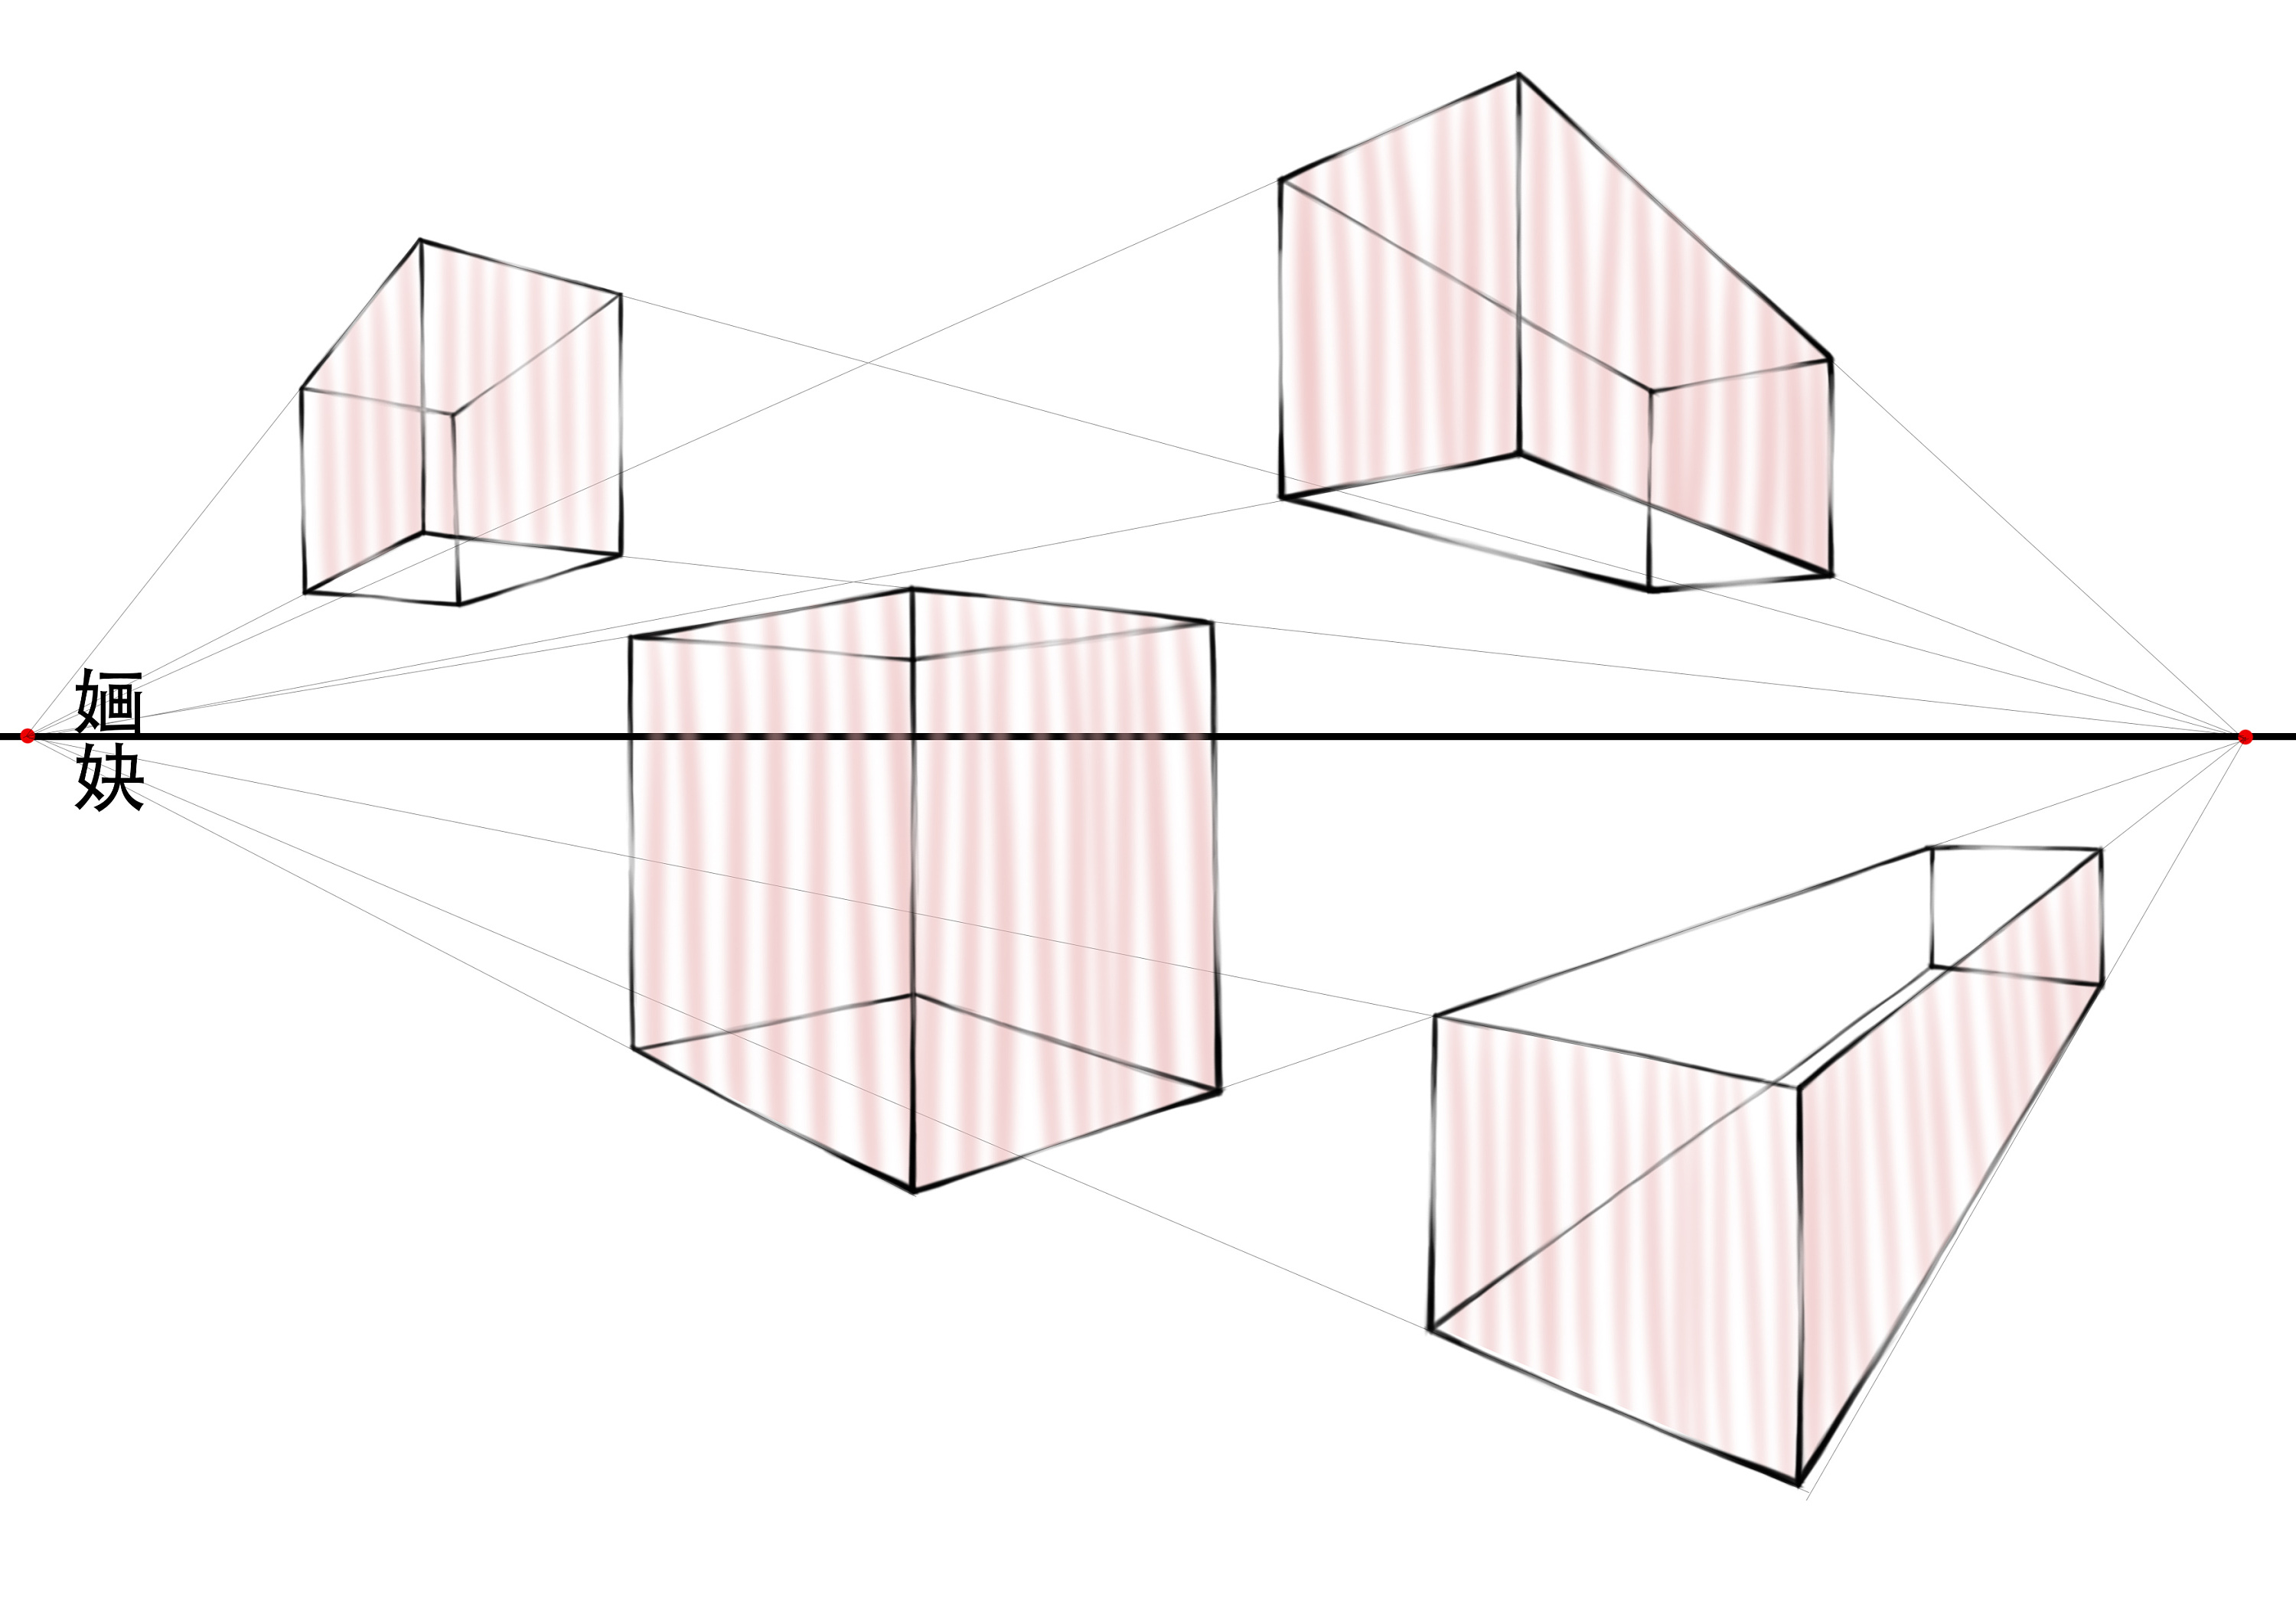 【透视原理】立方体两点透视原理分析及示意图 - 哔哩哔哩